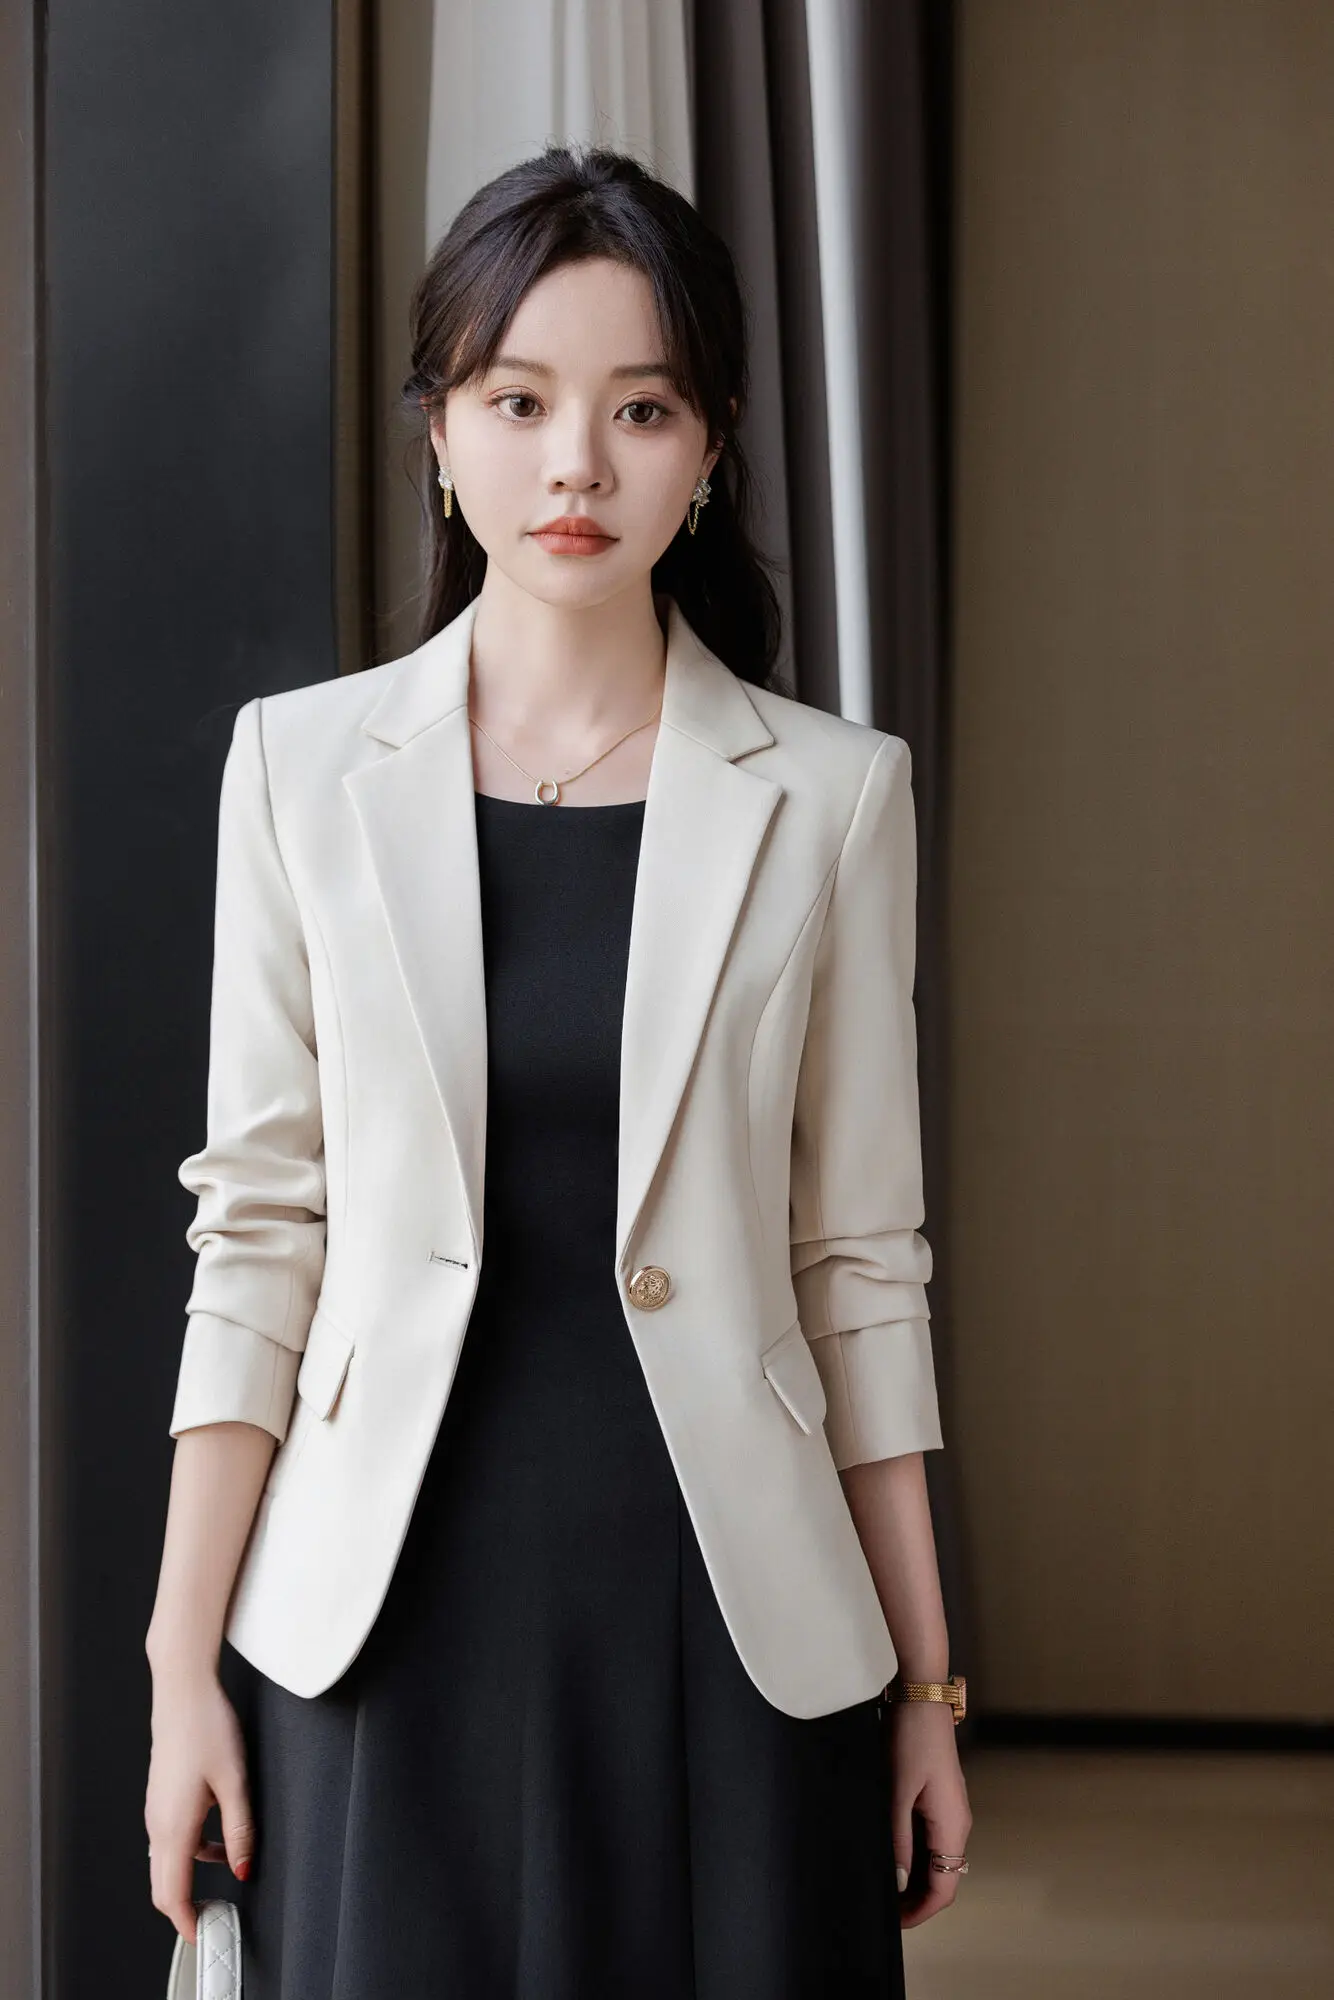 

Elegant Formal OL Styles Newest Blazers Femininos Jackets Coat for Women Business Work Wear Professional Outwear Tops Blaser